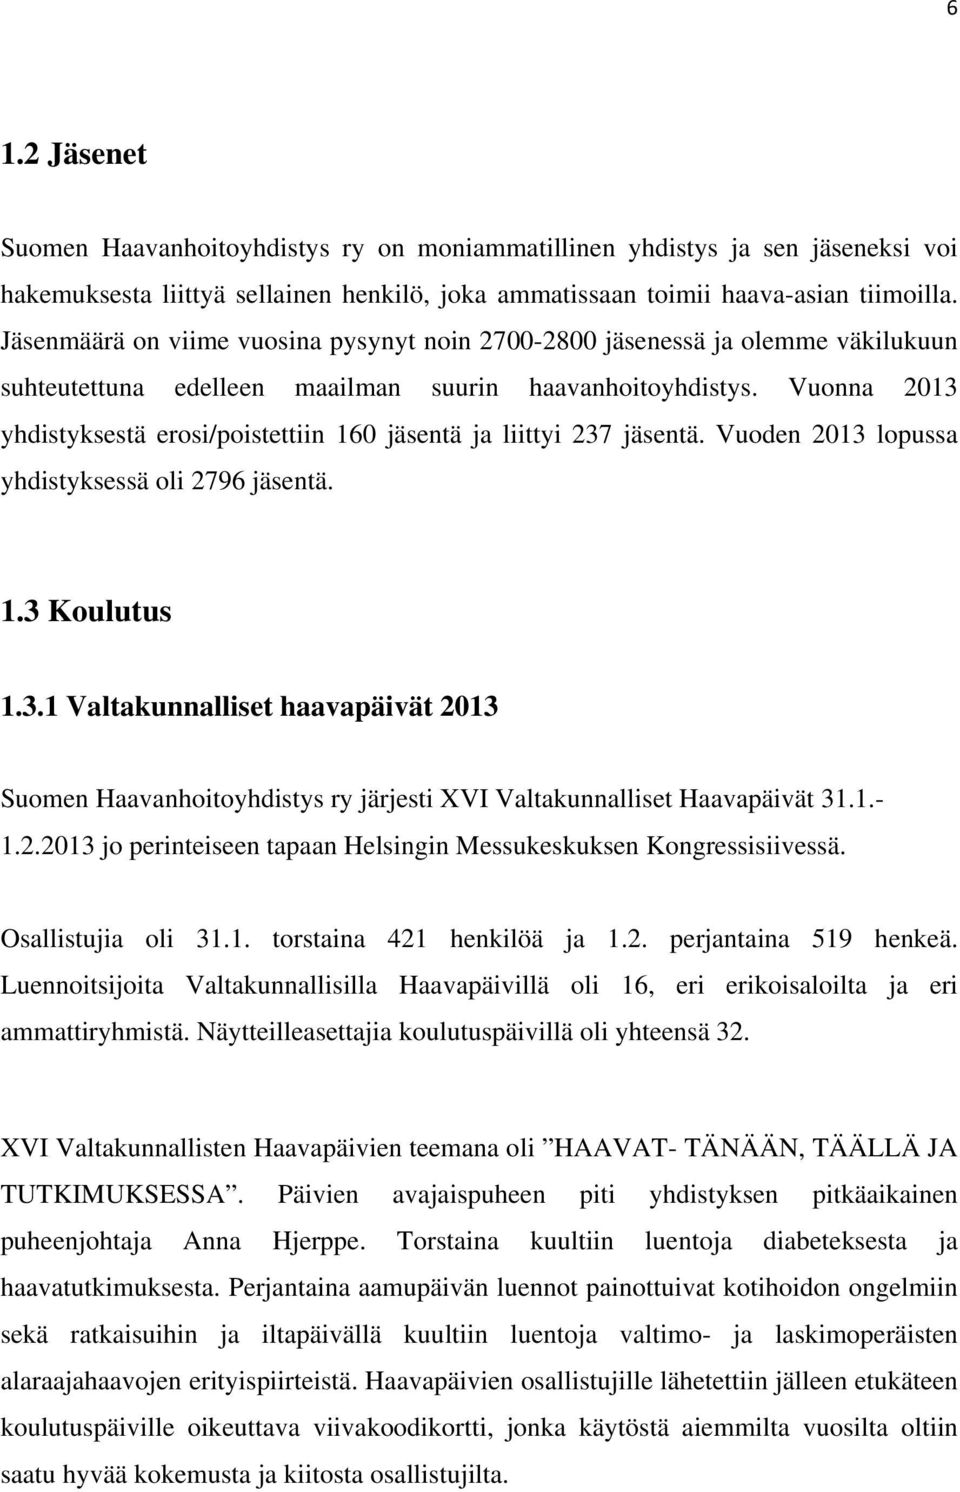 Vuonna 2013 yhdistyksestä erosi/poistettiin 160 jäsentä ja liittyi 237 jäsentä. Vuoden 2013 lopussa yhdistyksessä oli 2796 jäsentä. 1.3 Koulutus 1.3.1 Valtakunnalliset haavapäivät 2013 Suomen Haavanhoitoyhdistys ry järjesti XVI Valtakunnalliset Haavapäivät 31.